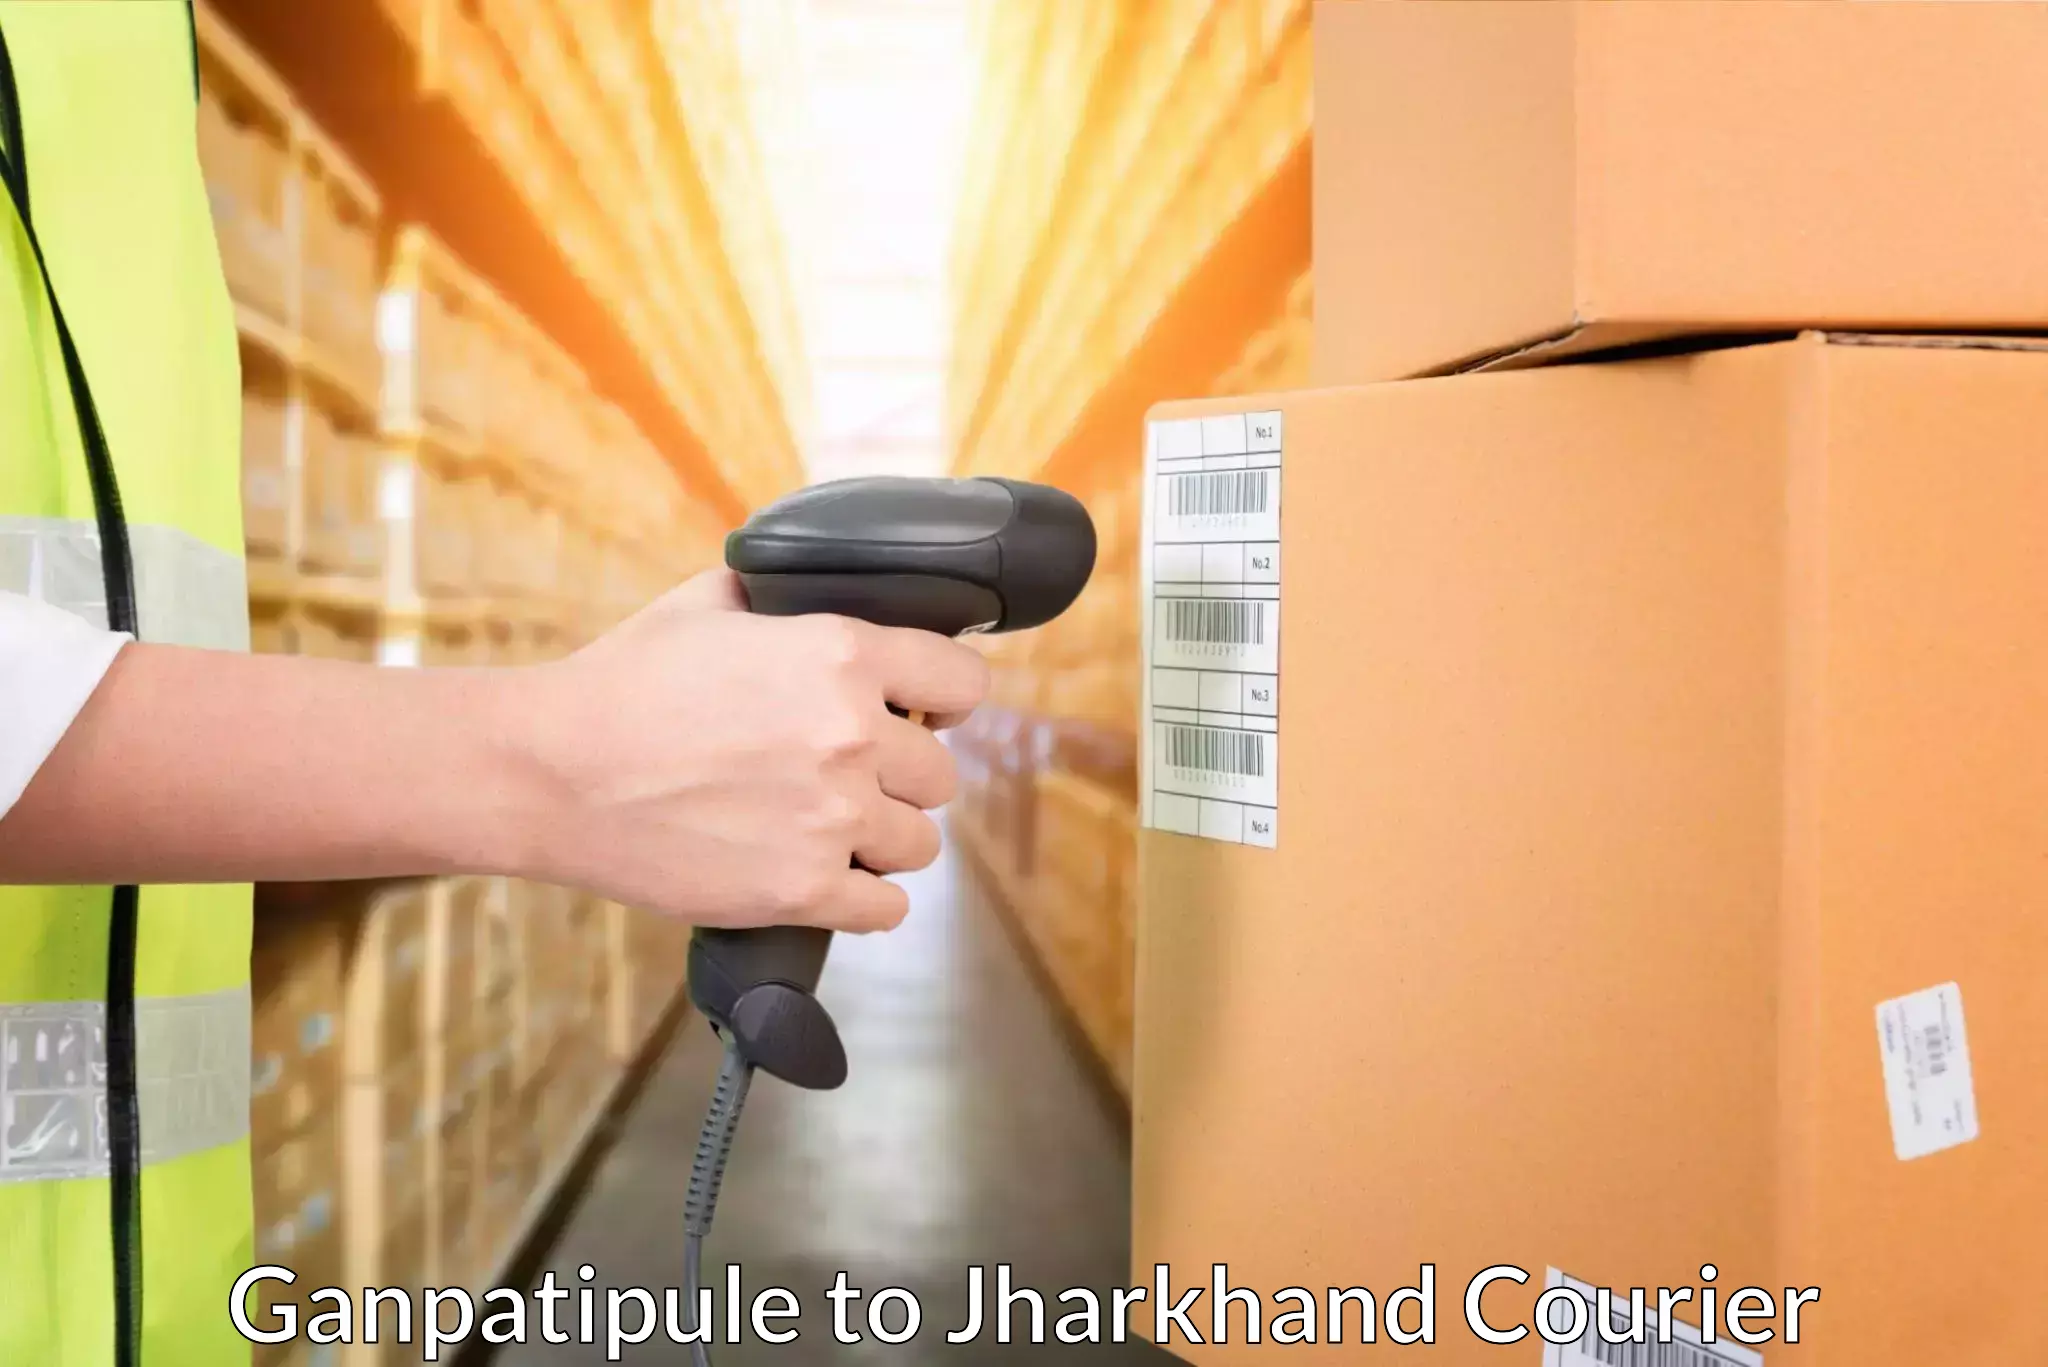 Cost-effective courier solutions Ganpatipule to Hariharganj